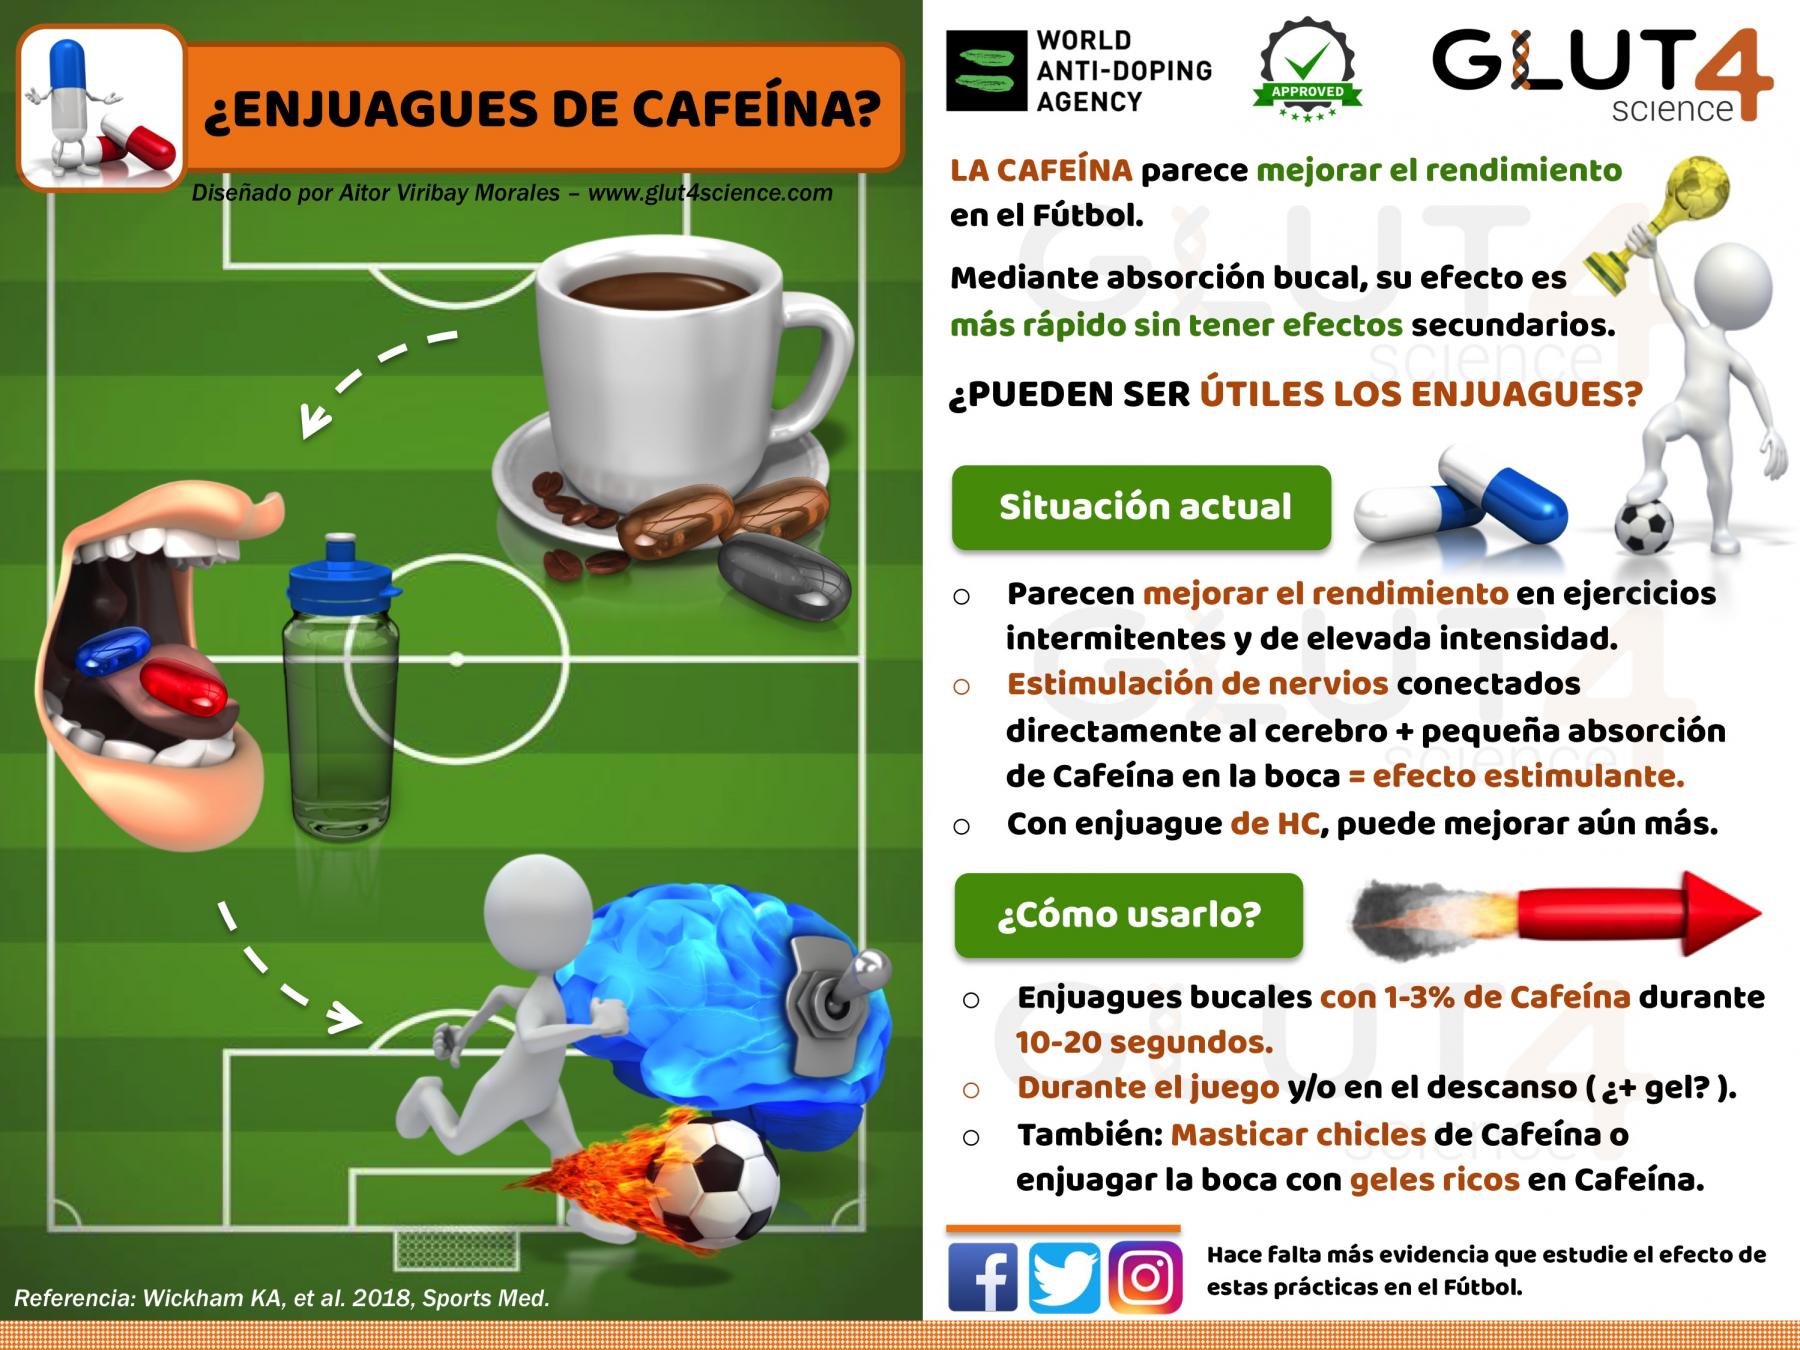 Enjuagues de Cafeína en el Fútbol